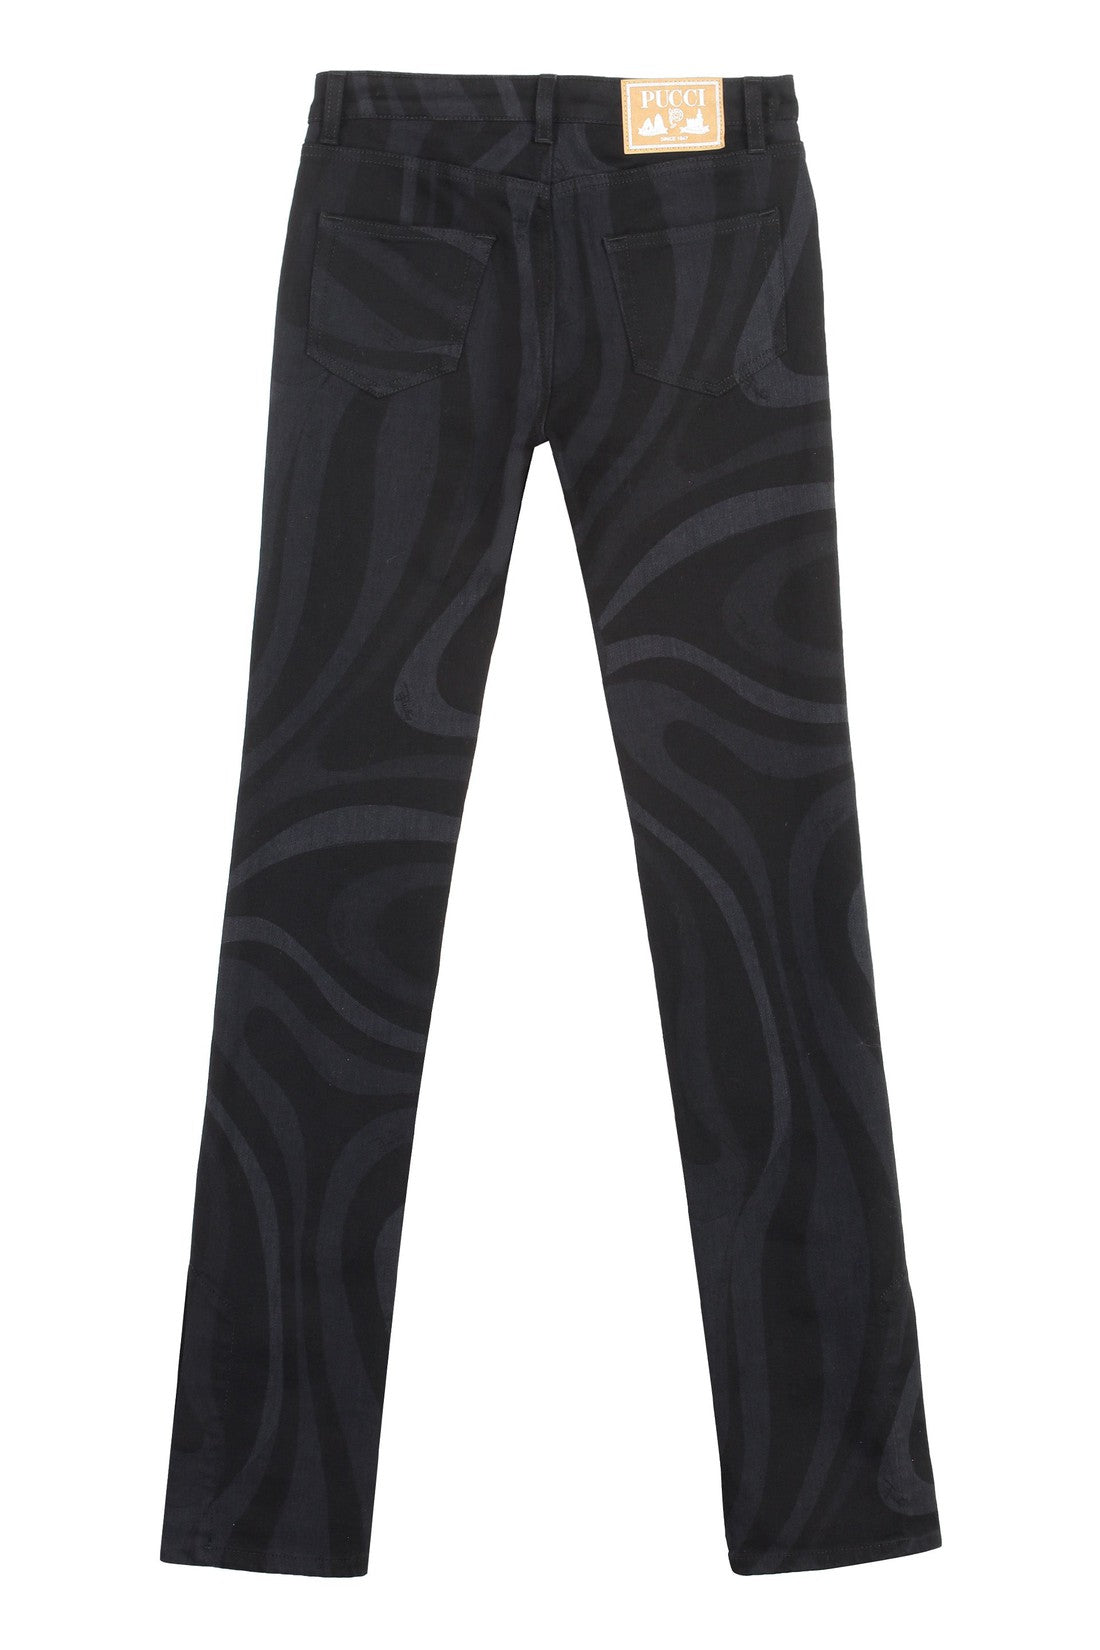 PUCCI-OUTLET-SALE-5-pocket straight-leg jeans-ARCHIVIST